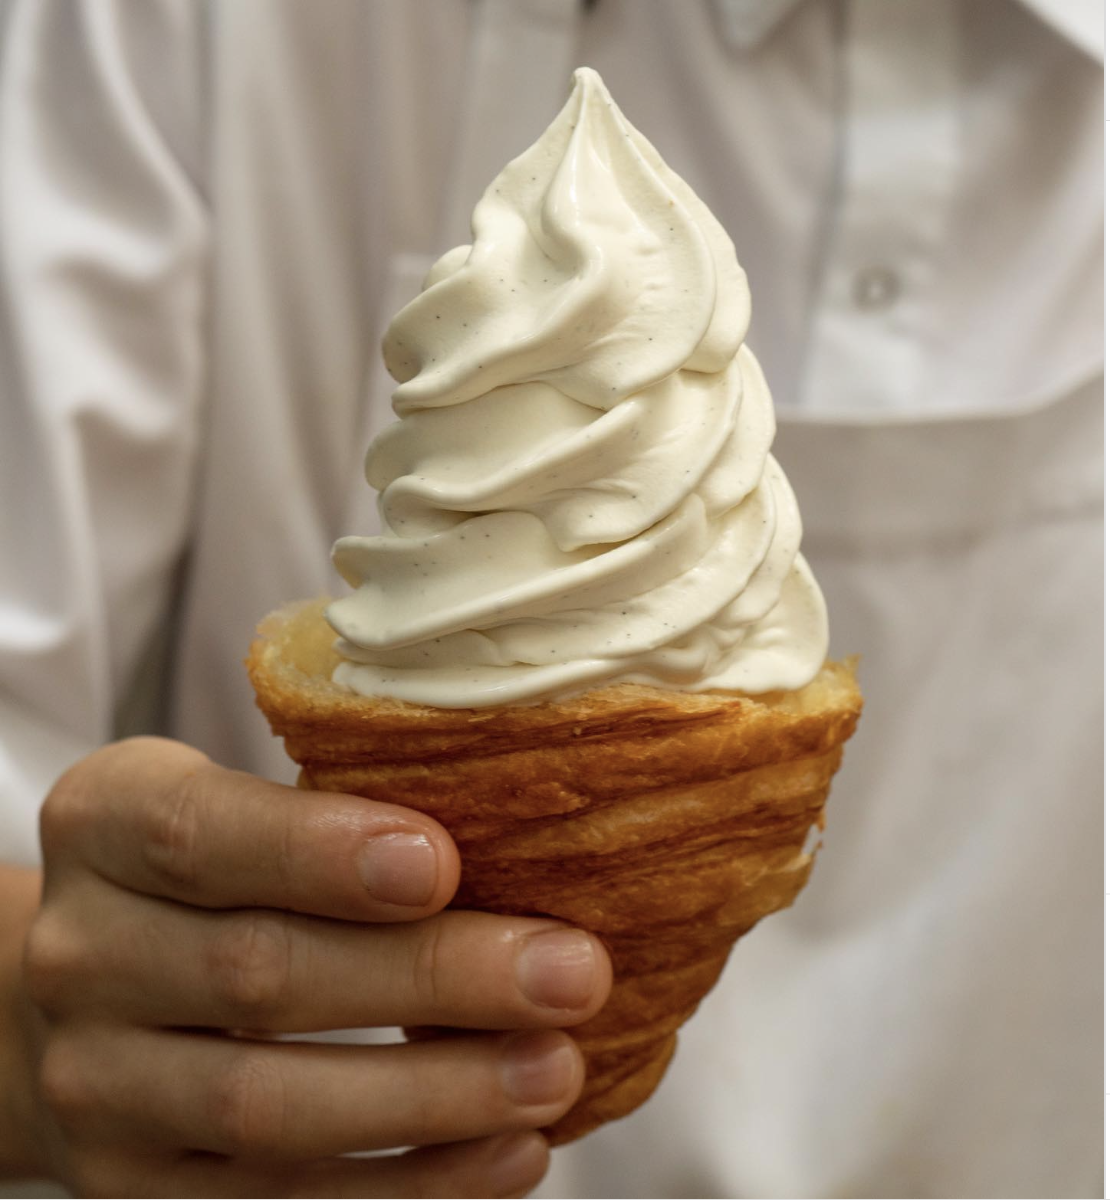 un helado suave de vainilla con un croissant como cono, famoso helado de comida rápida de Rosetta